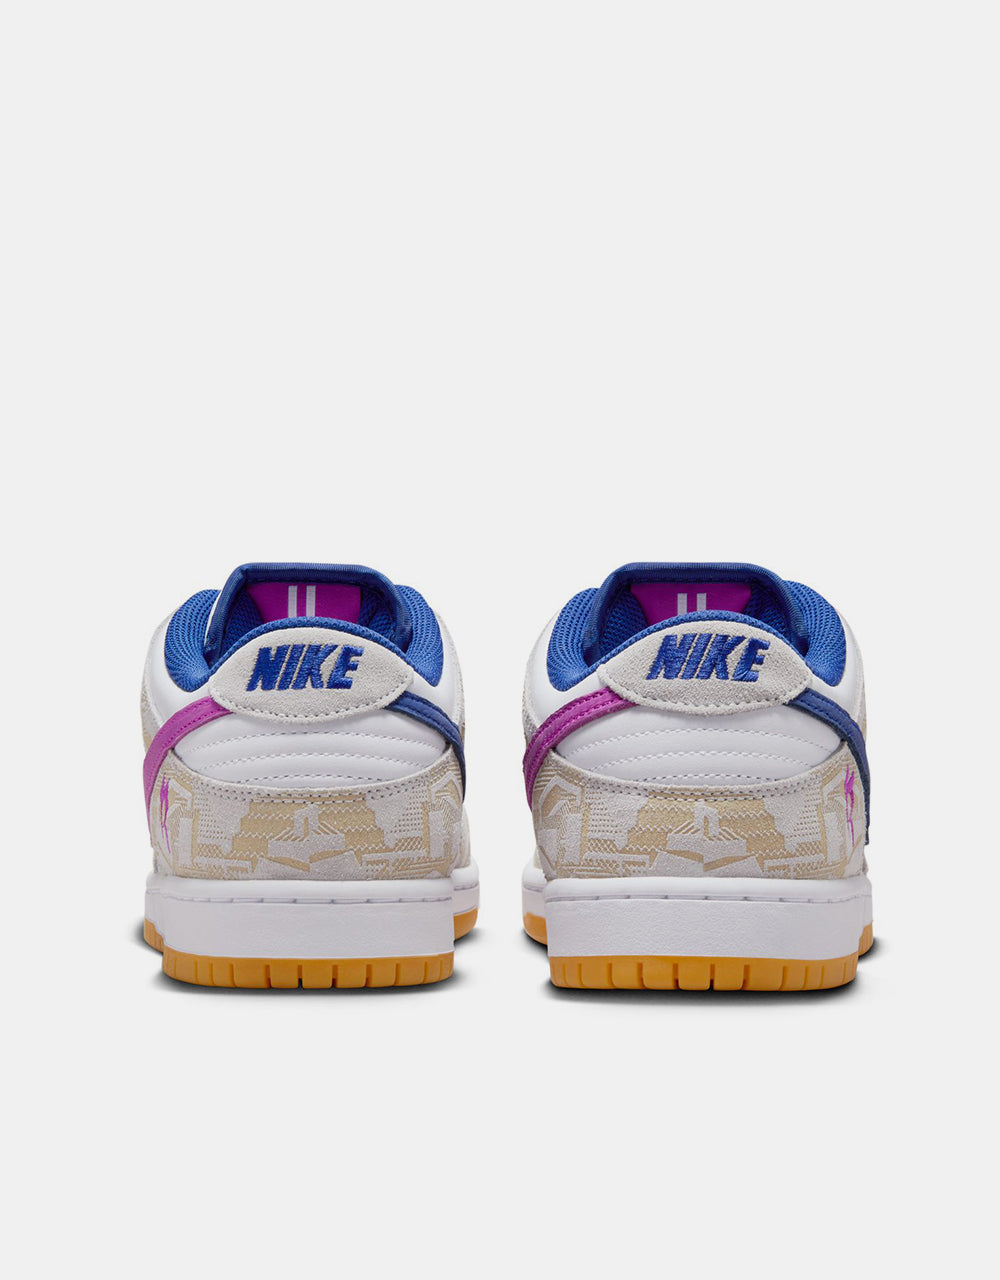 Nike SB 'Rayssa' Dunk Low Premium QS Skate Shoes - Pure Platinum/Deep Royal Blue/Vivid Purple/White/Gum Yellow